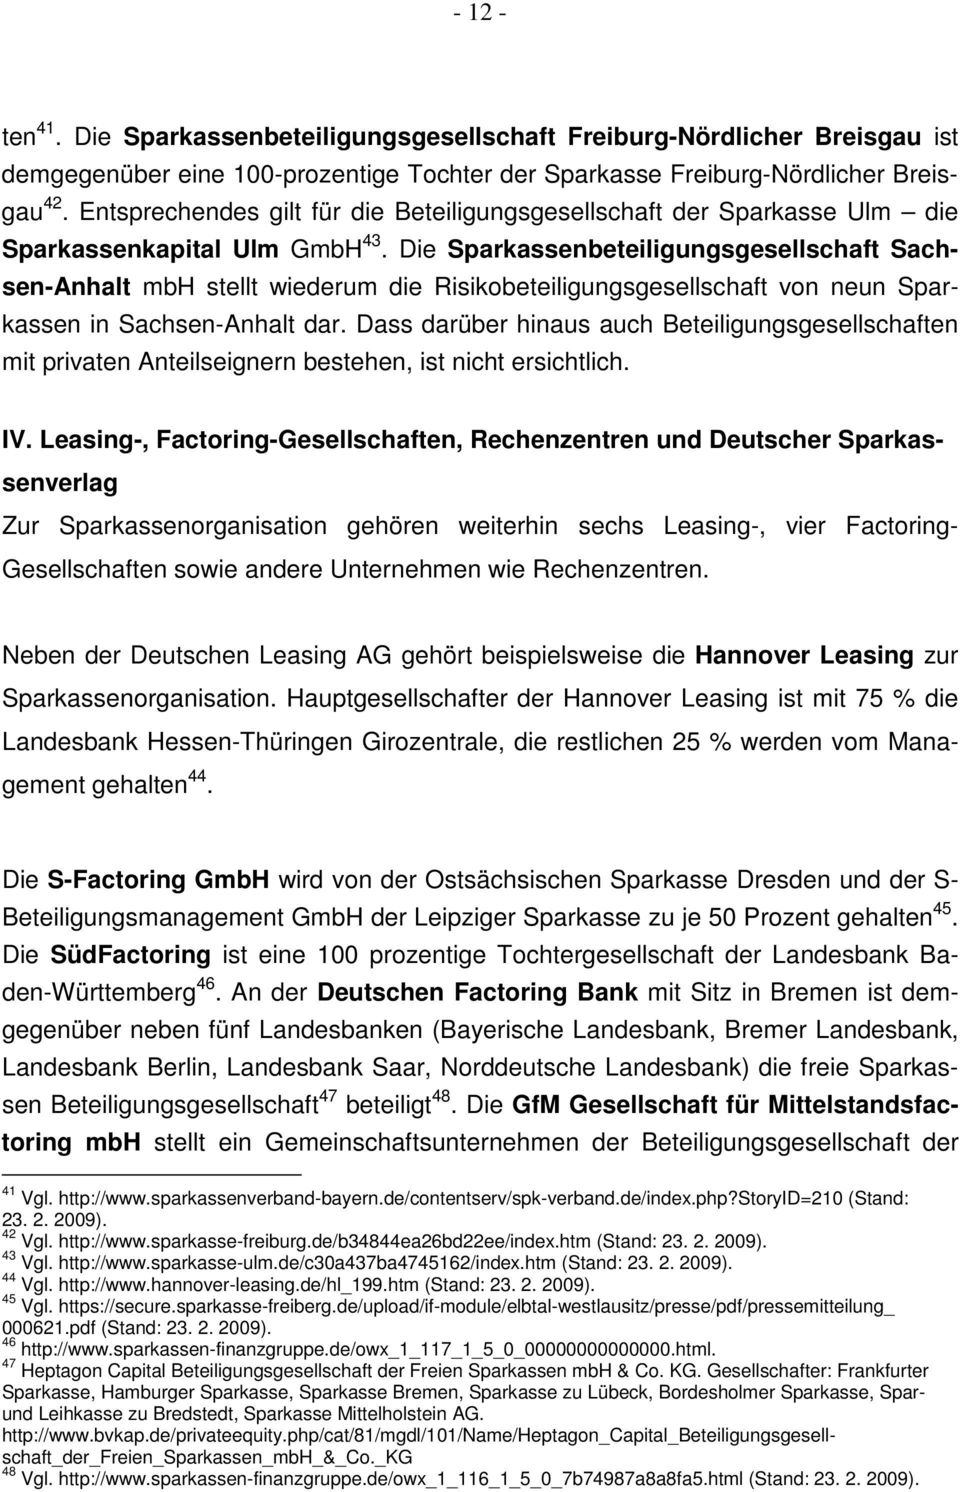 Die Sparkassenbeteiligungsgesellschaft Sachsen-Anhalt mbh stellt wiederum die Risikobeteiligungsgesellschaft von neun Sparkassen in Sachsen-Anhalt dar.